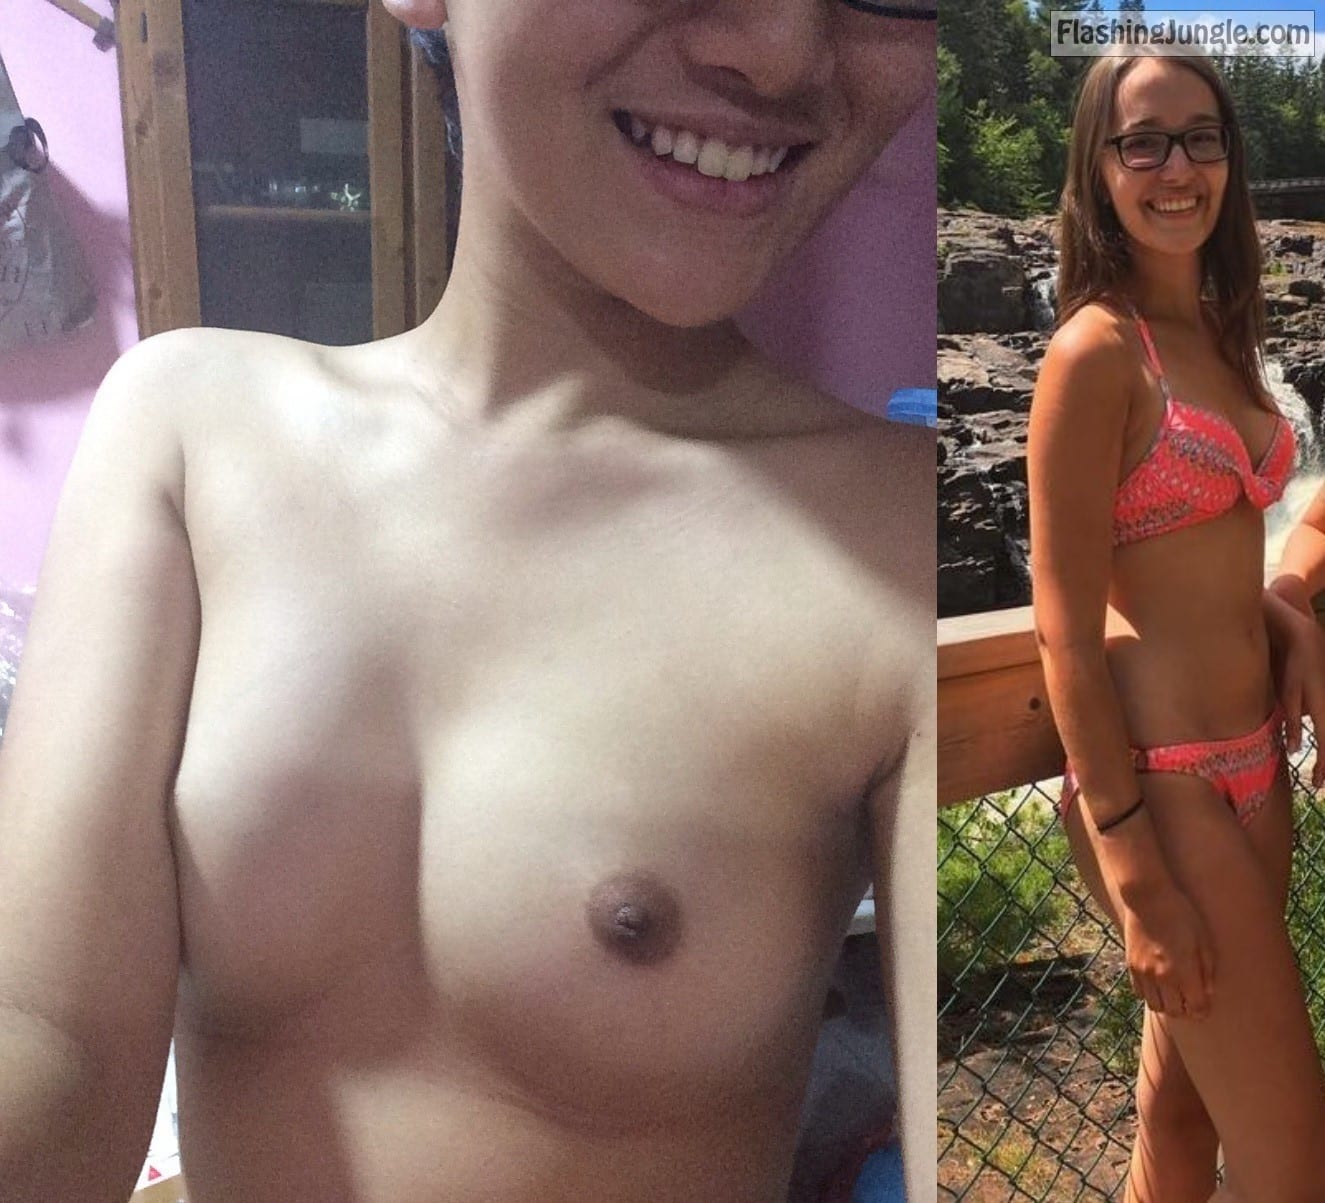 Teen Flashing Pics Real Amateurs  : Jade teen slut boobs – clothed nude